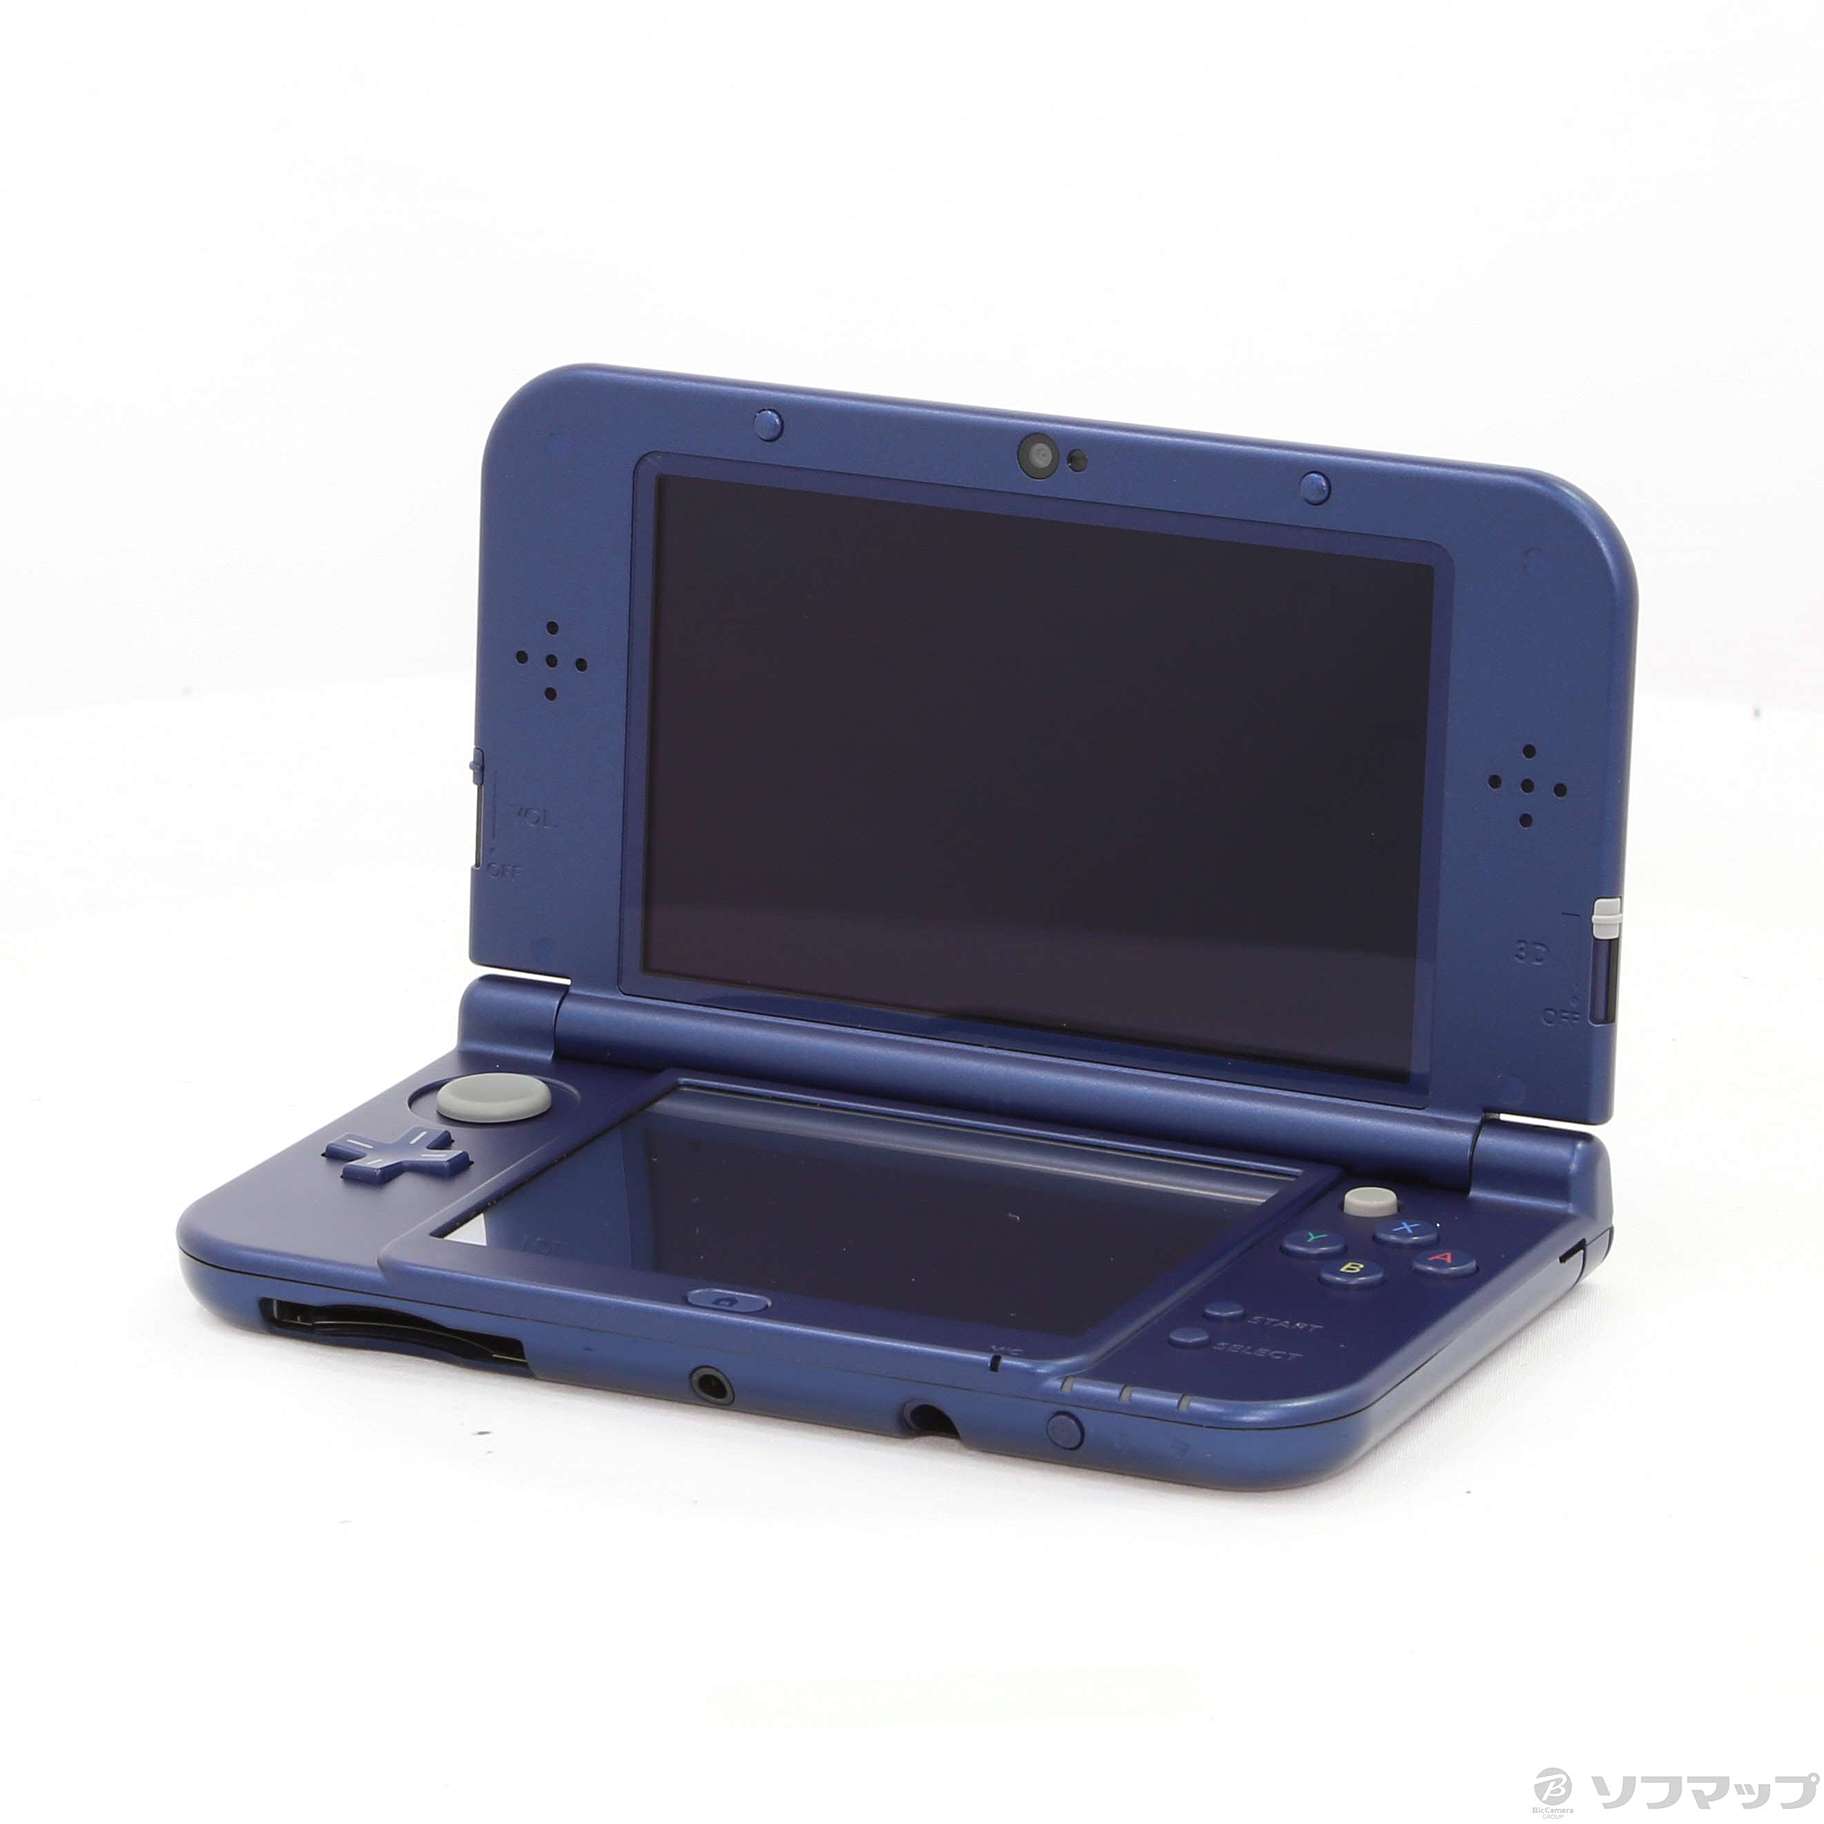 【箱付・完品・純正充電器付】New ニンテンドー 3DS LL メタリックブルー